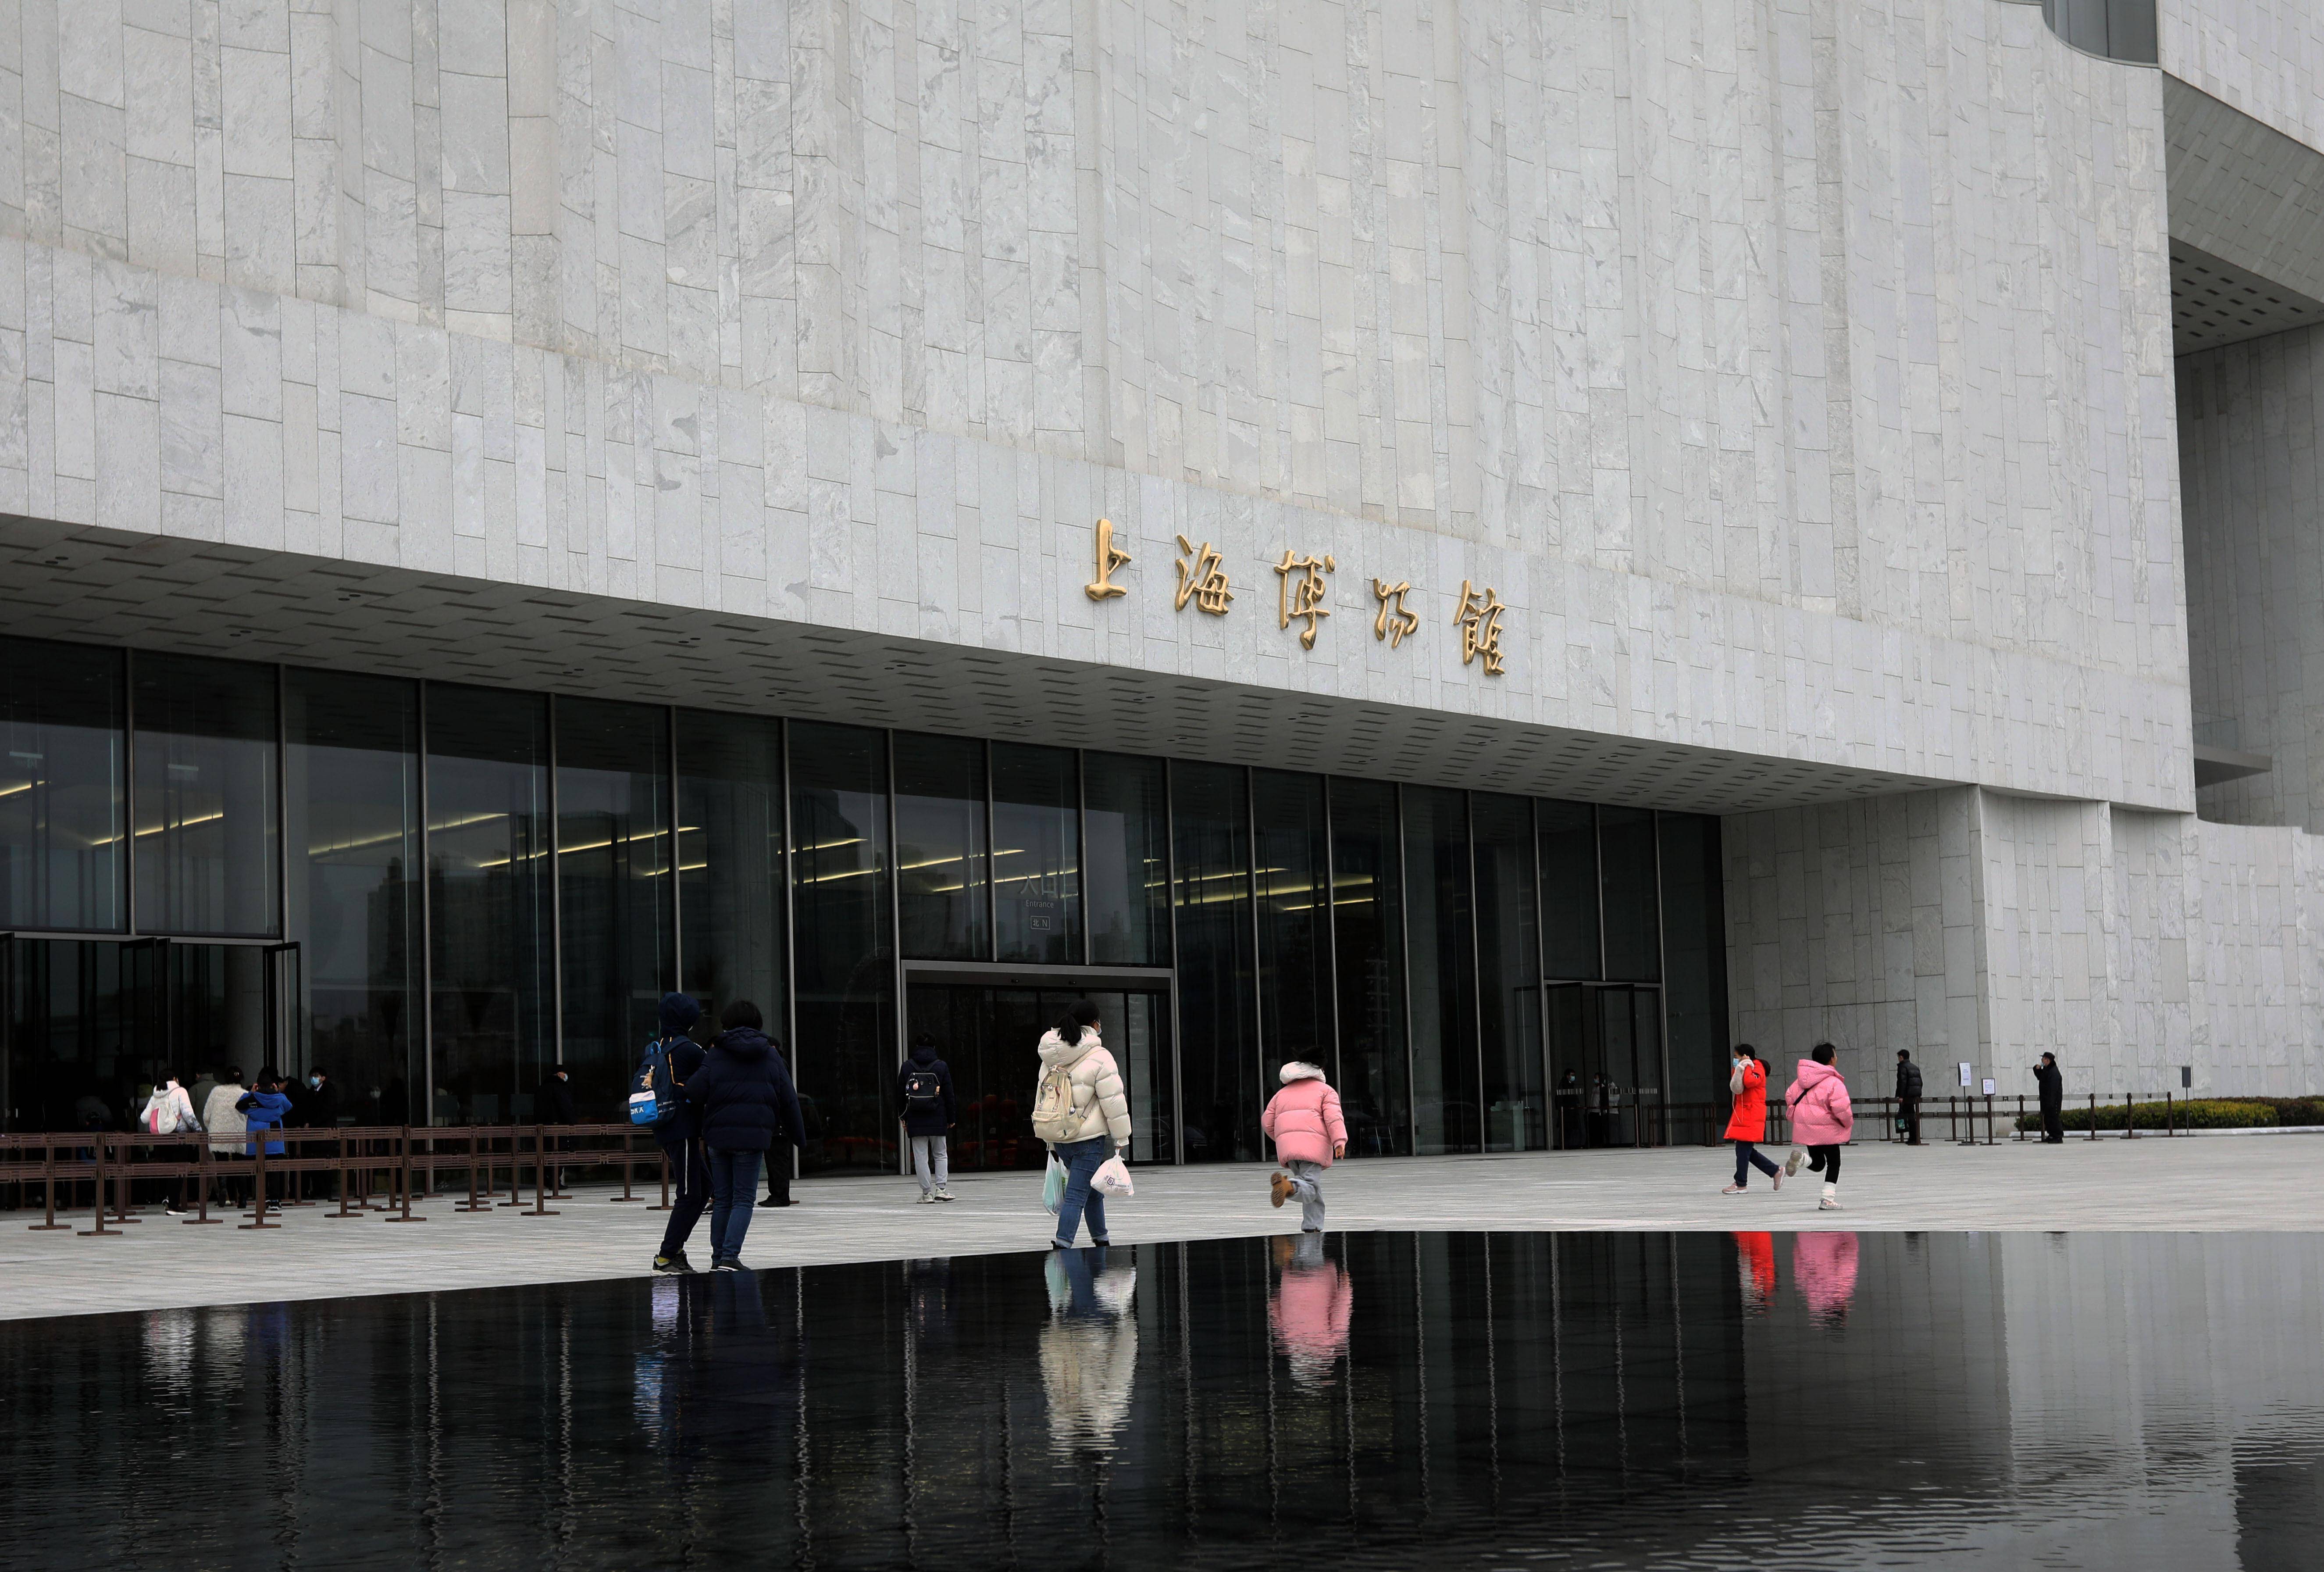 上海博物馆路线图图片